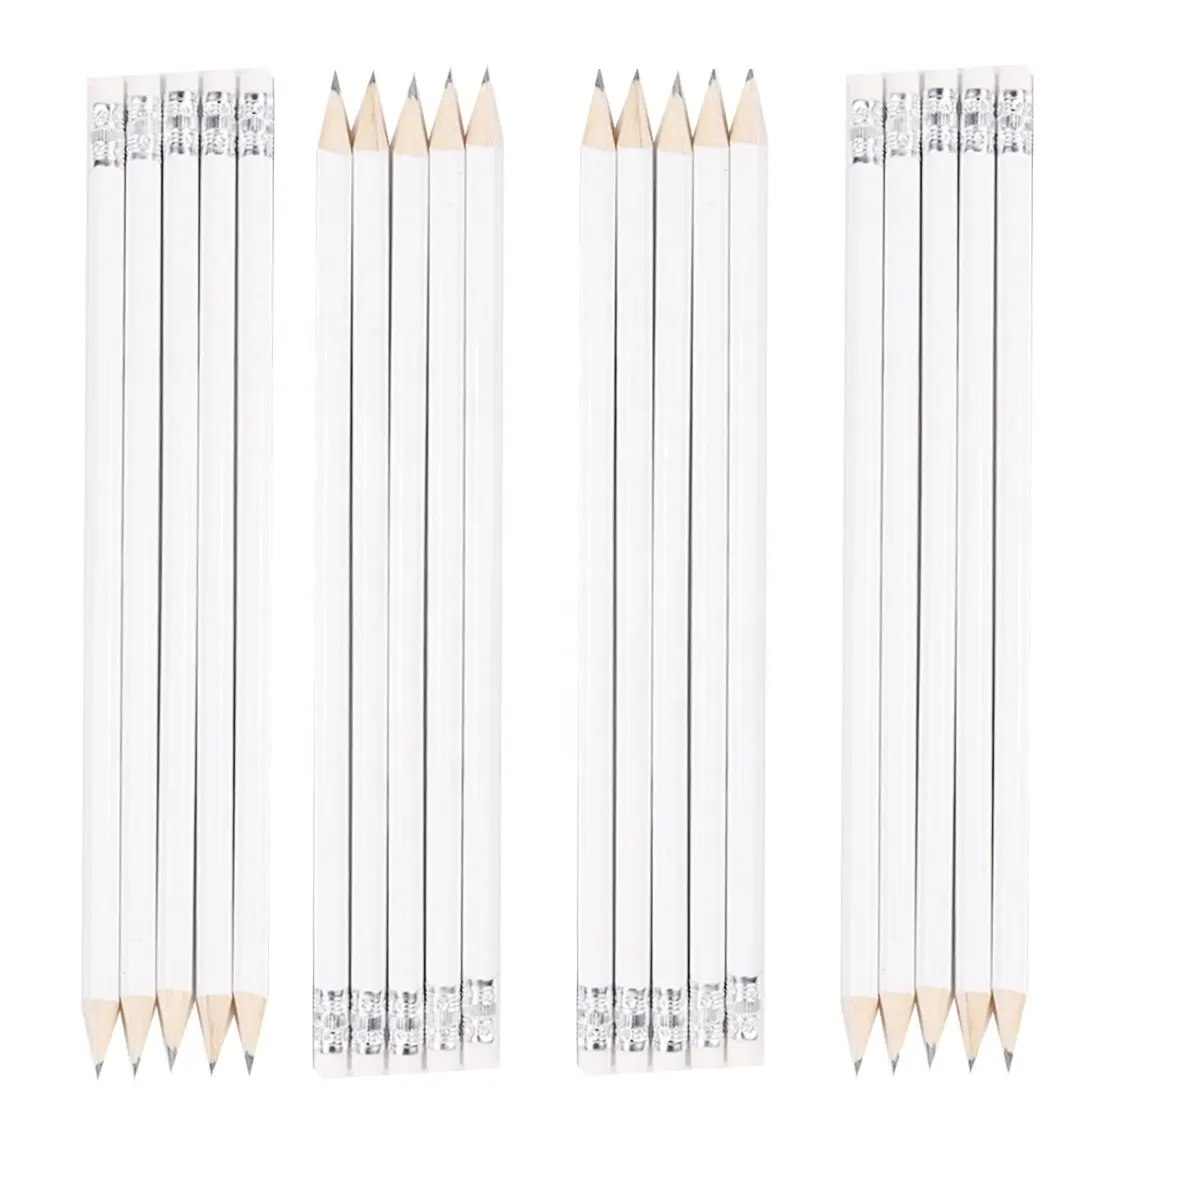 Оптовая продажа, хорошее качество, белые карандаши HB с ластиком, OEM рекламные карандаши HB